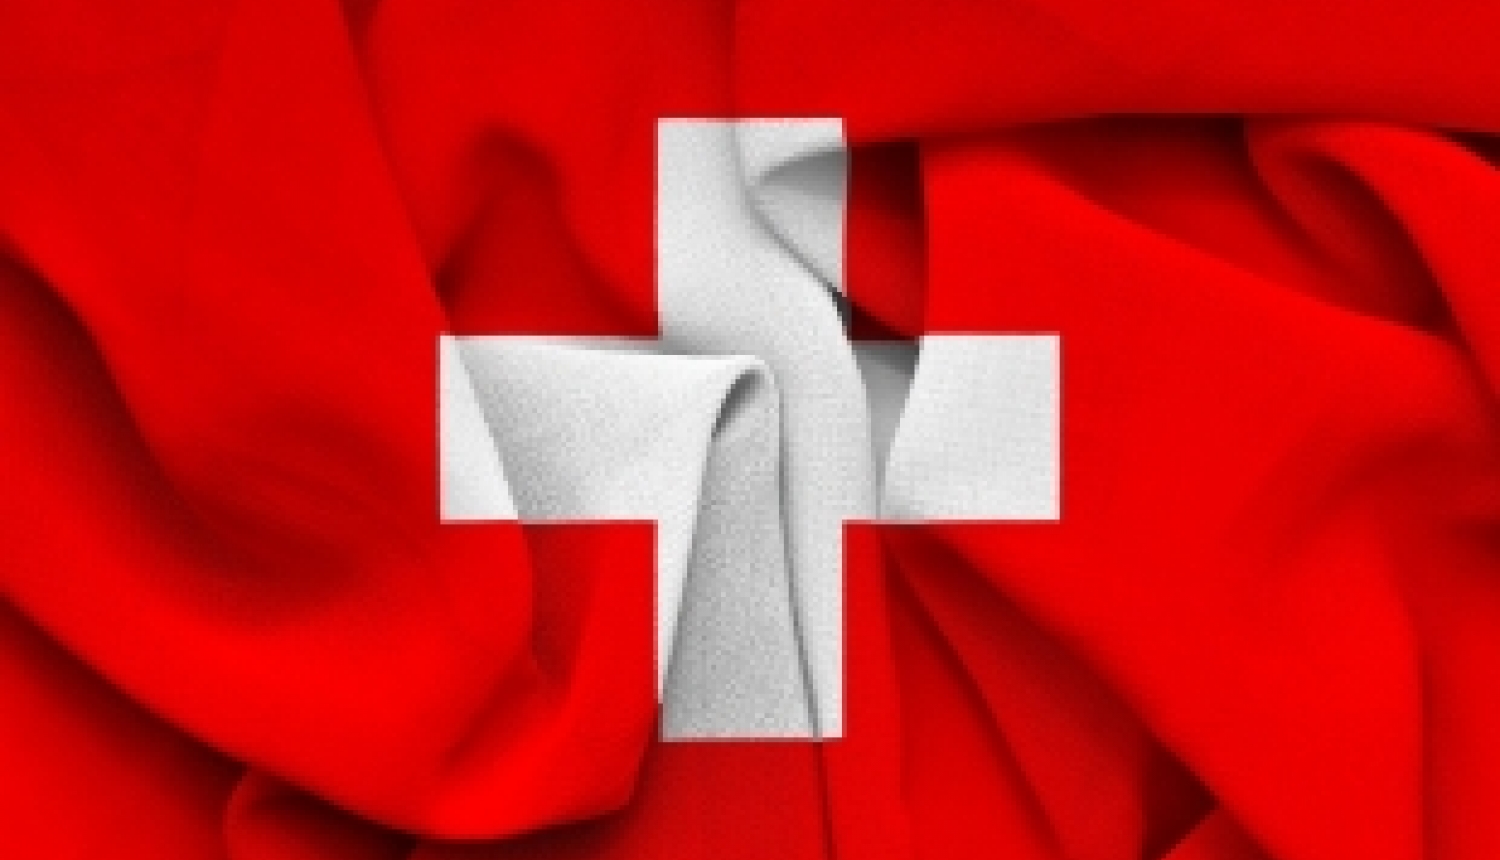 Vēl līdz 15. novembrim iespēja pieteikties Šveices valdības izcilības stipendijai